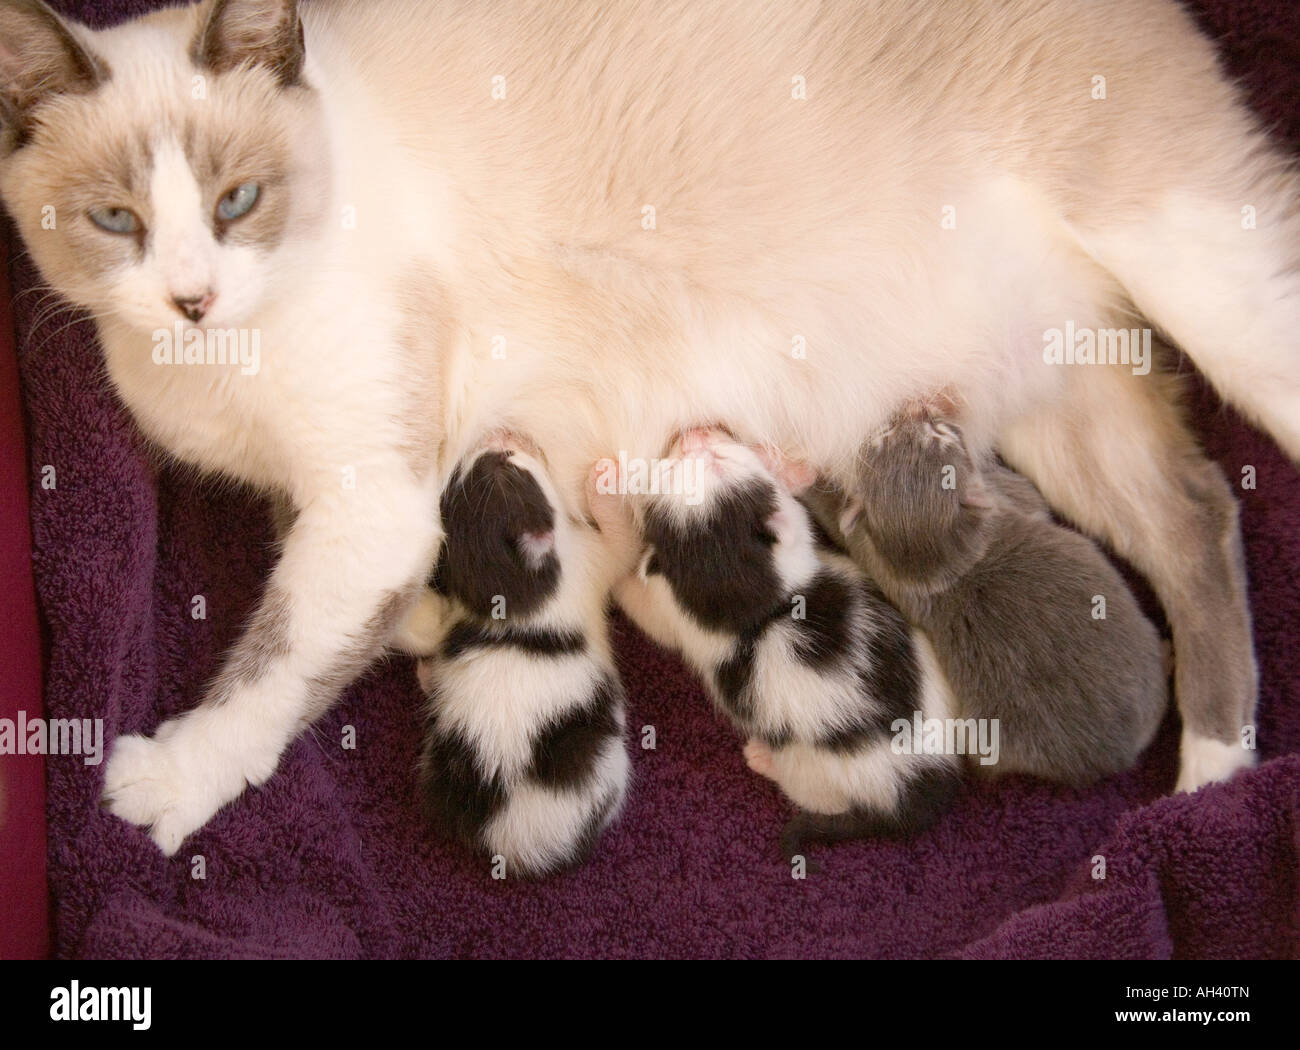 Una madre gatto teneramente infermieri i suoi tre i gattini appena nati. Lei e due dei suoi cuccioli sono Manx, avente senza code. Foto Stock